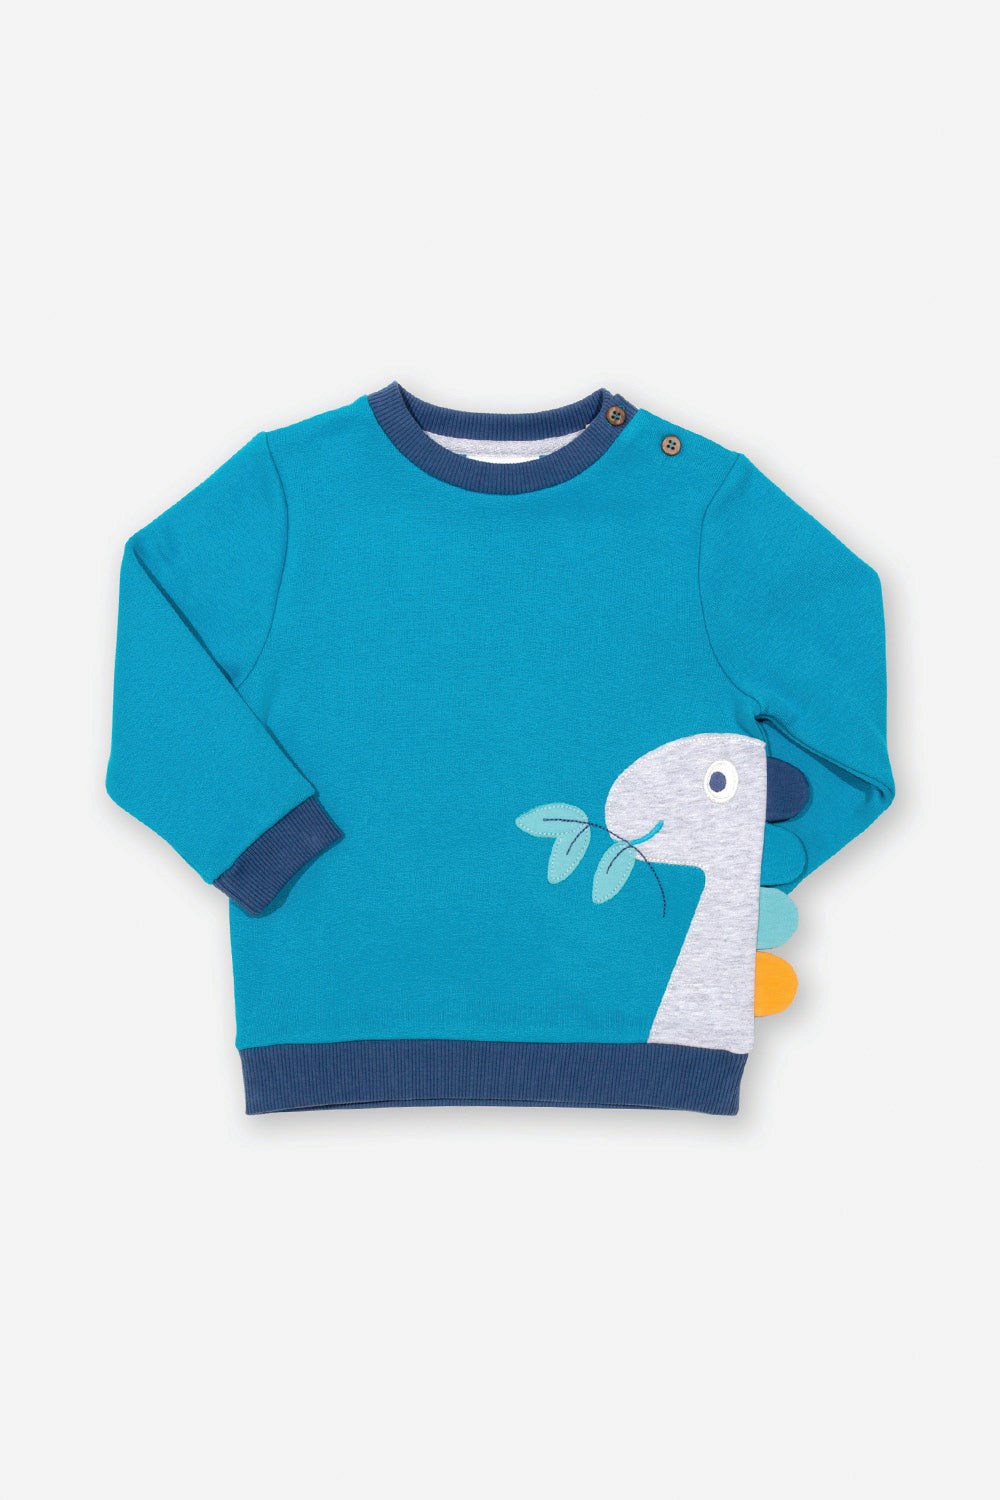 Dino Baby/Kids Sweatshirt -